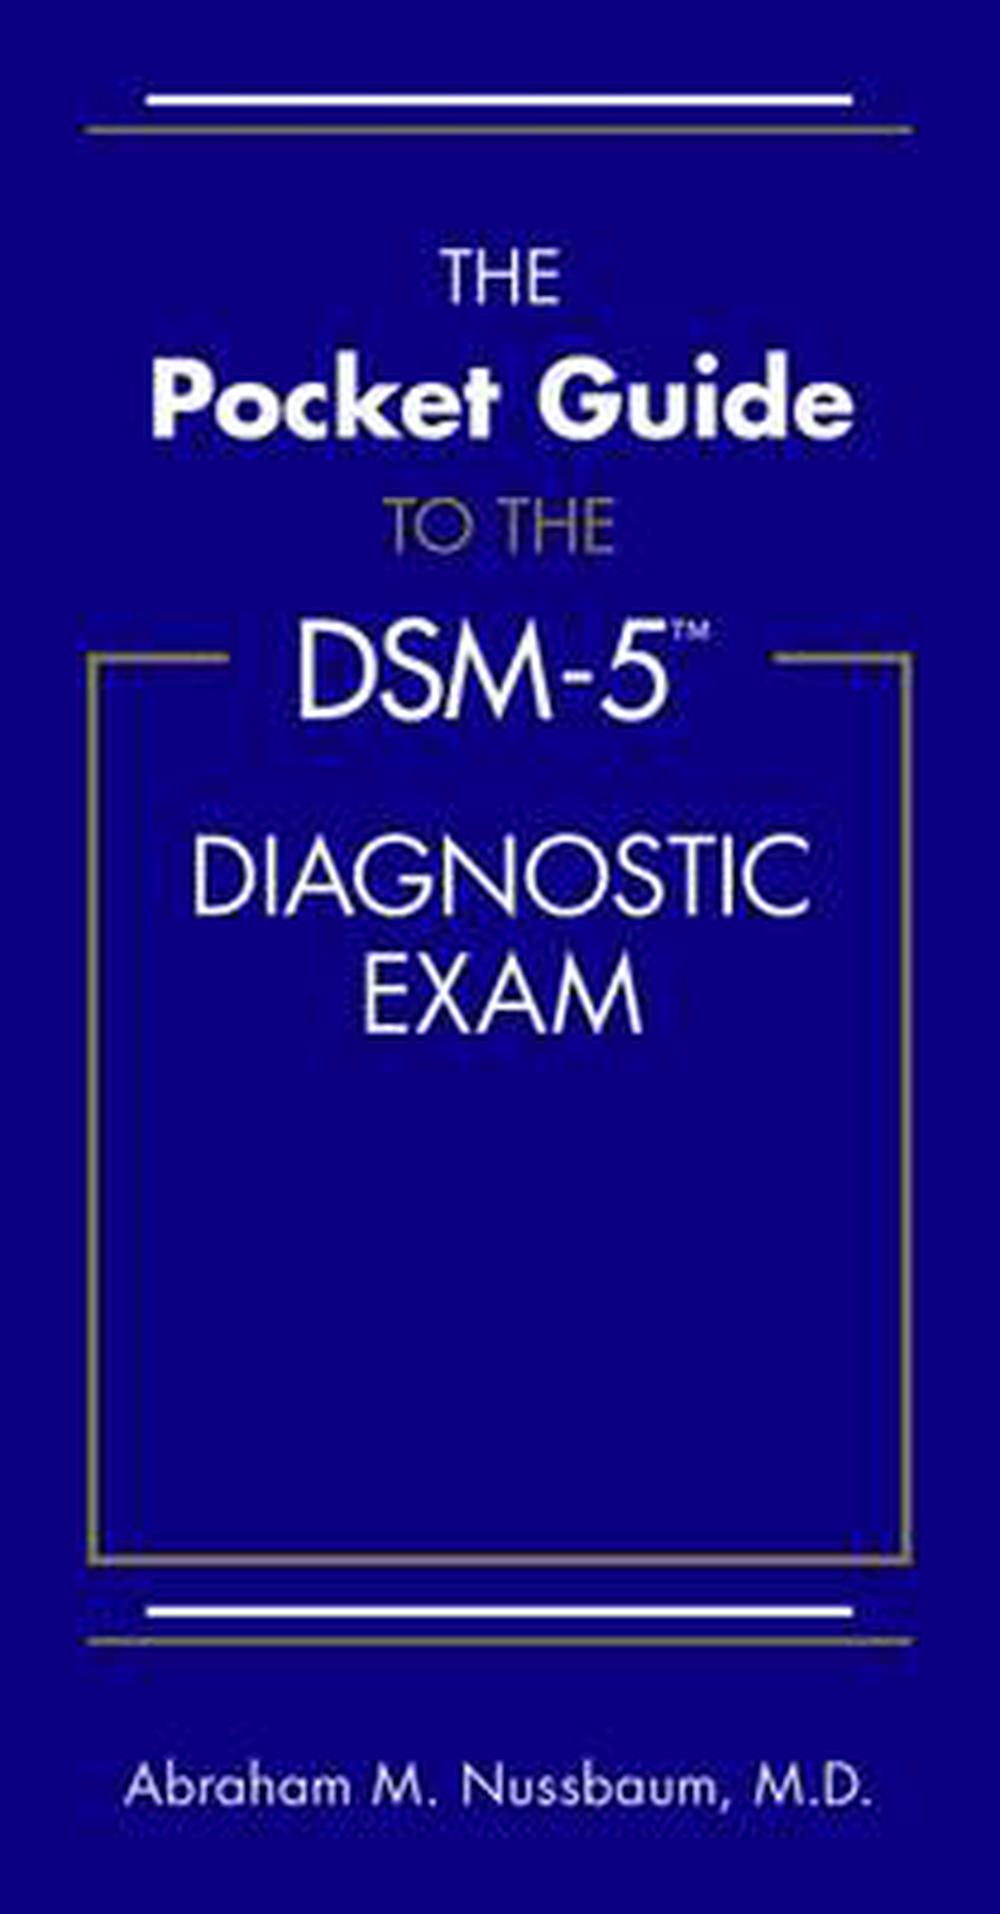 dsm 5 pdf free download deutsch